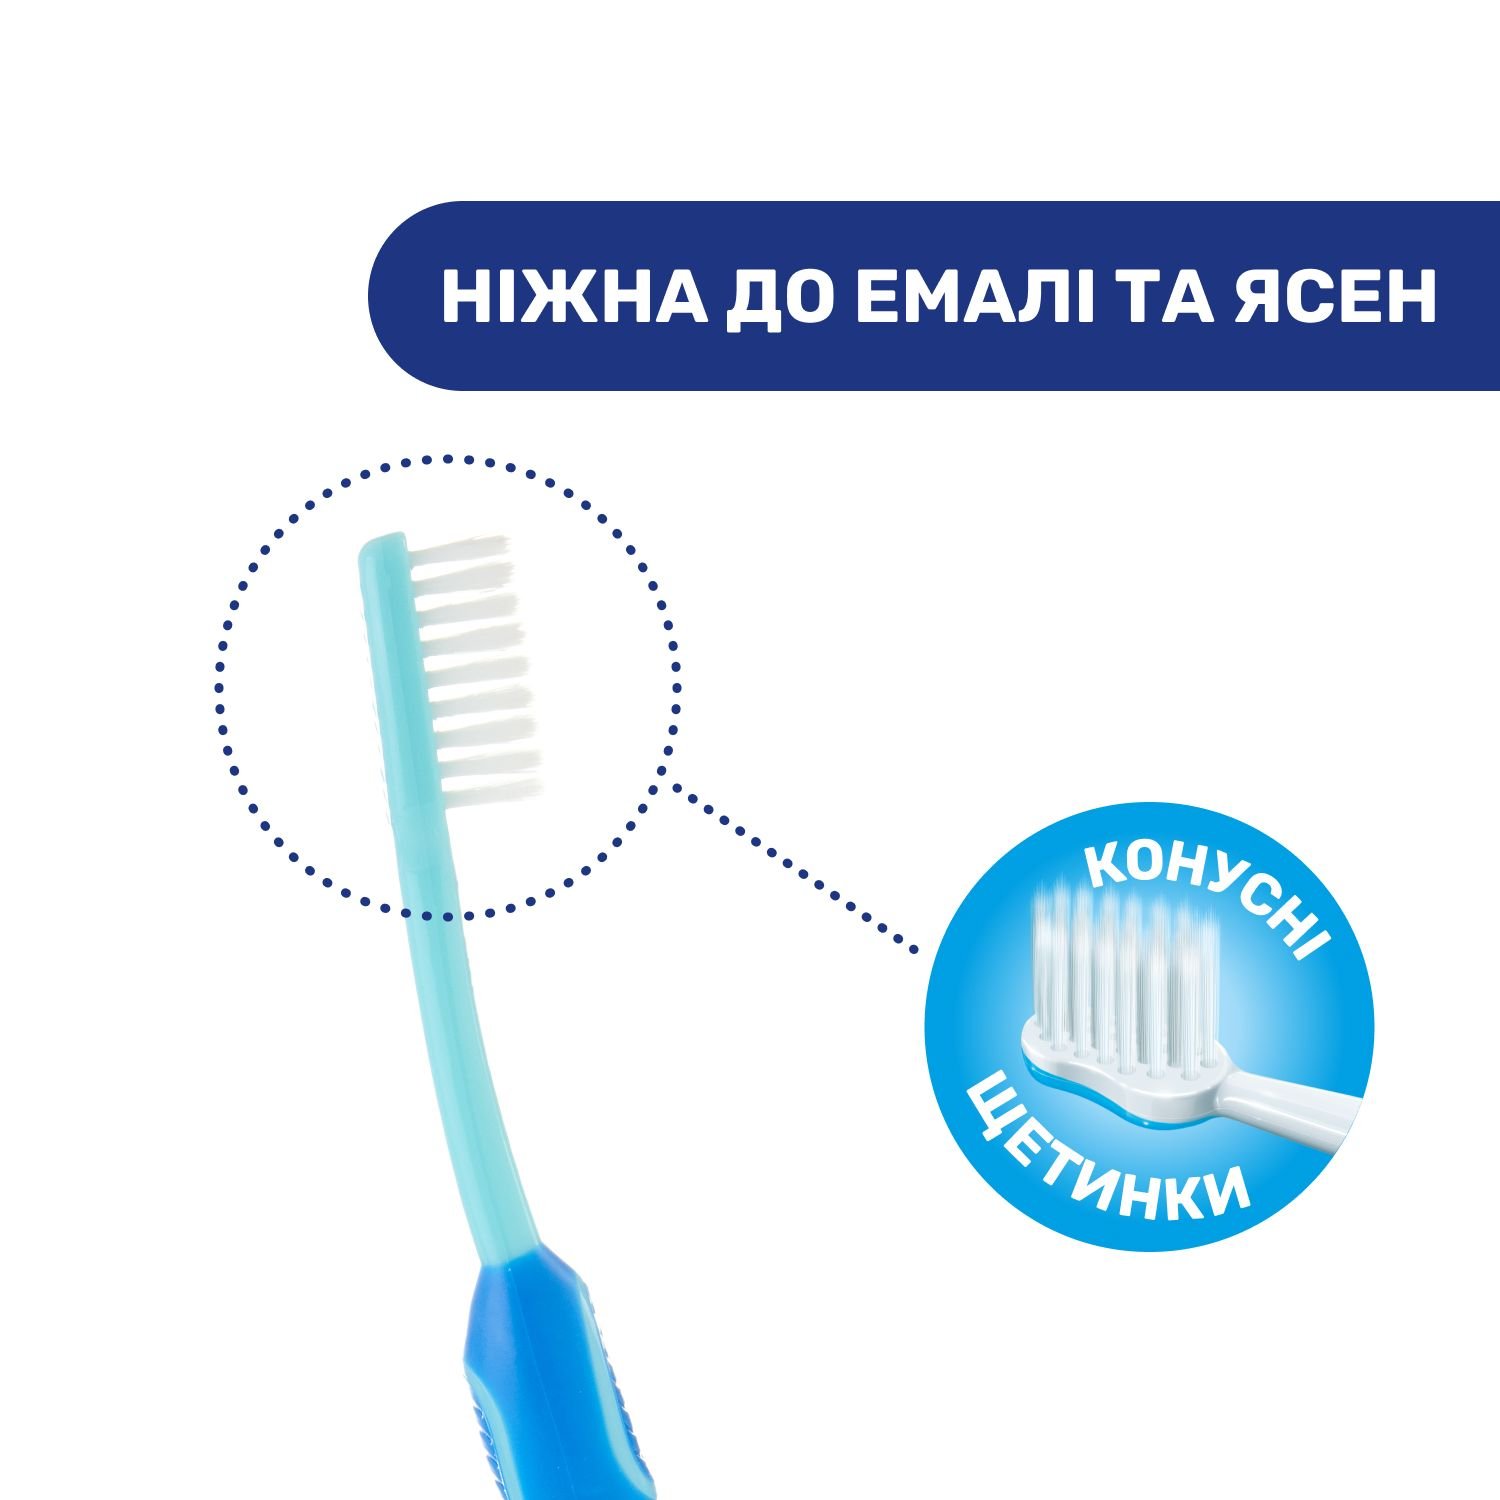 Дитяча зубна щітка Chicco для молочних зубів Левеня, синій, 3-6 років (09079.20.10) - фото 4